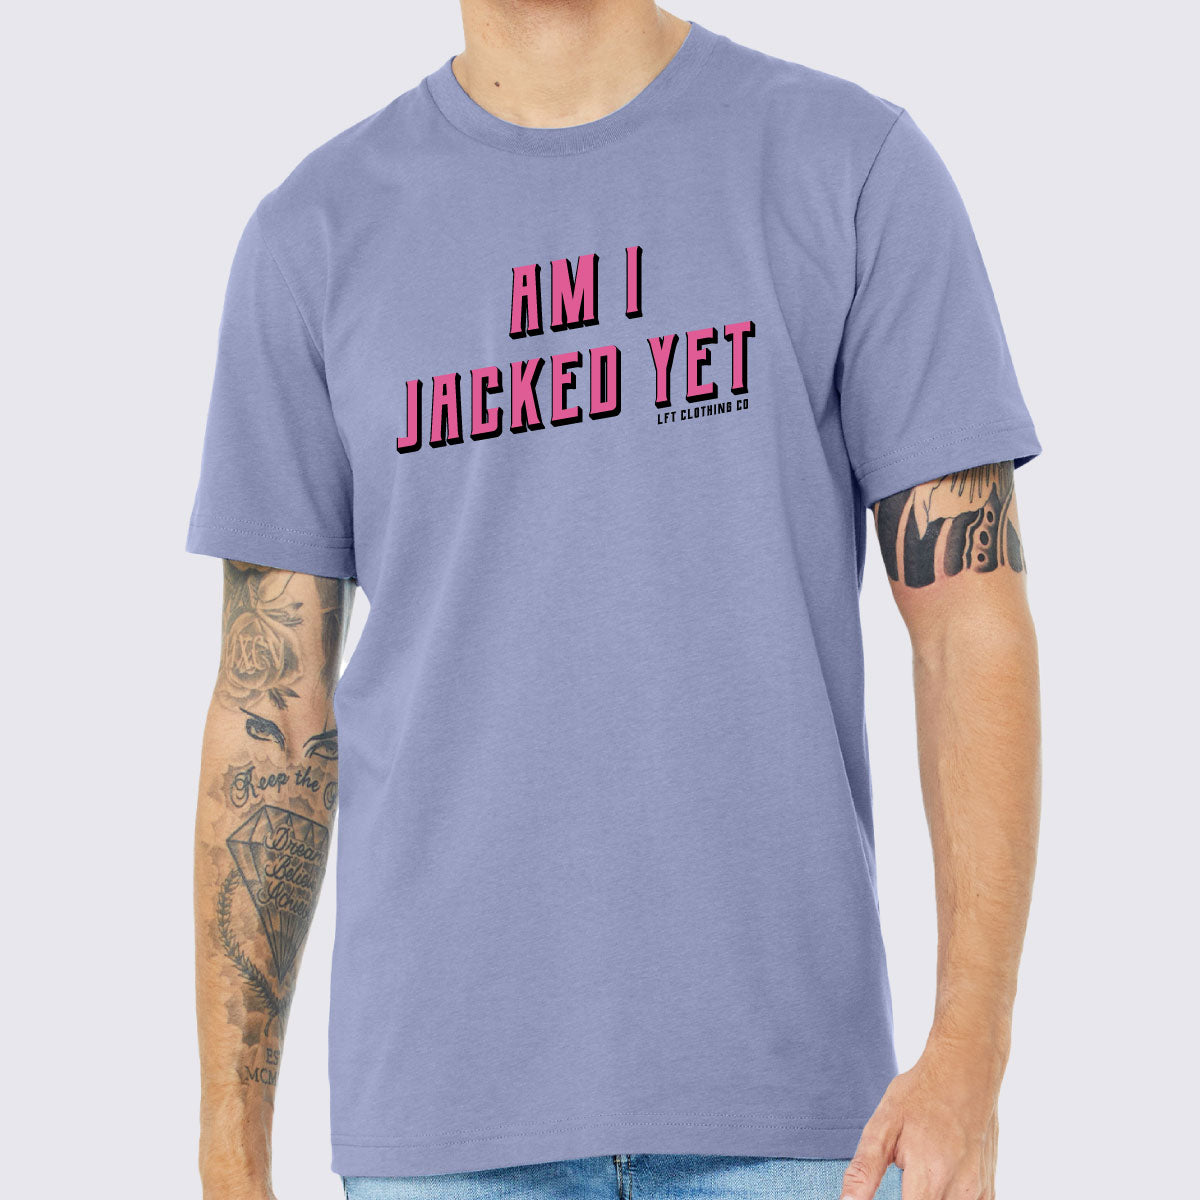 Am I Jacked Yet Unisex Jersey Tee - The LFT Clothing Company